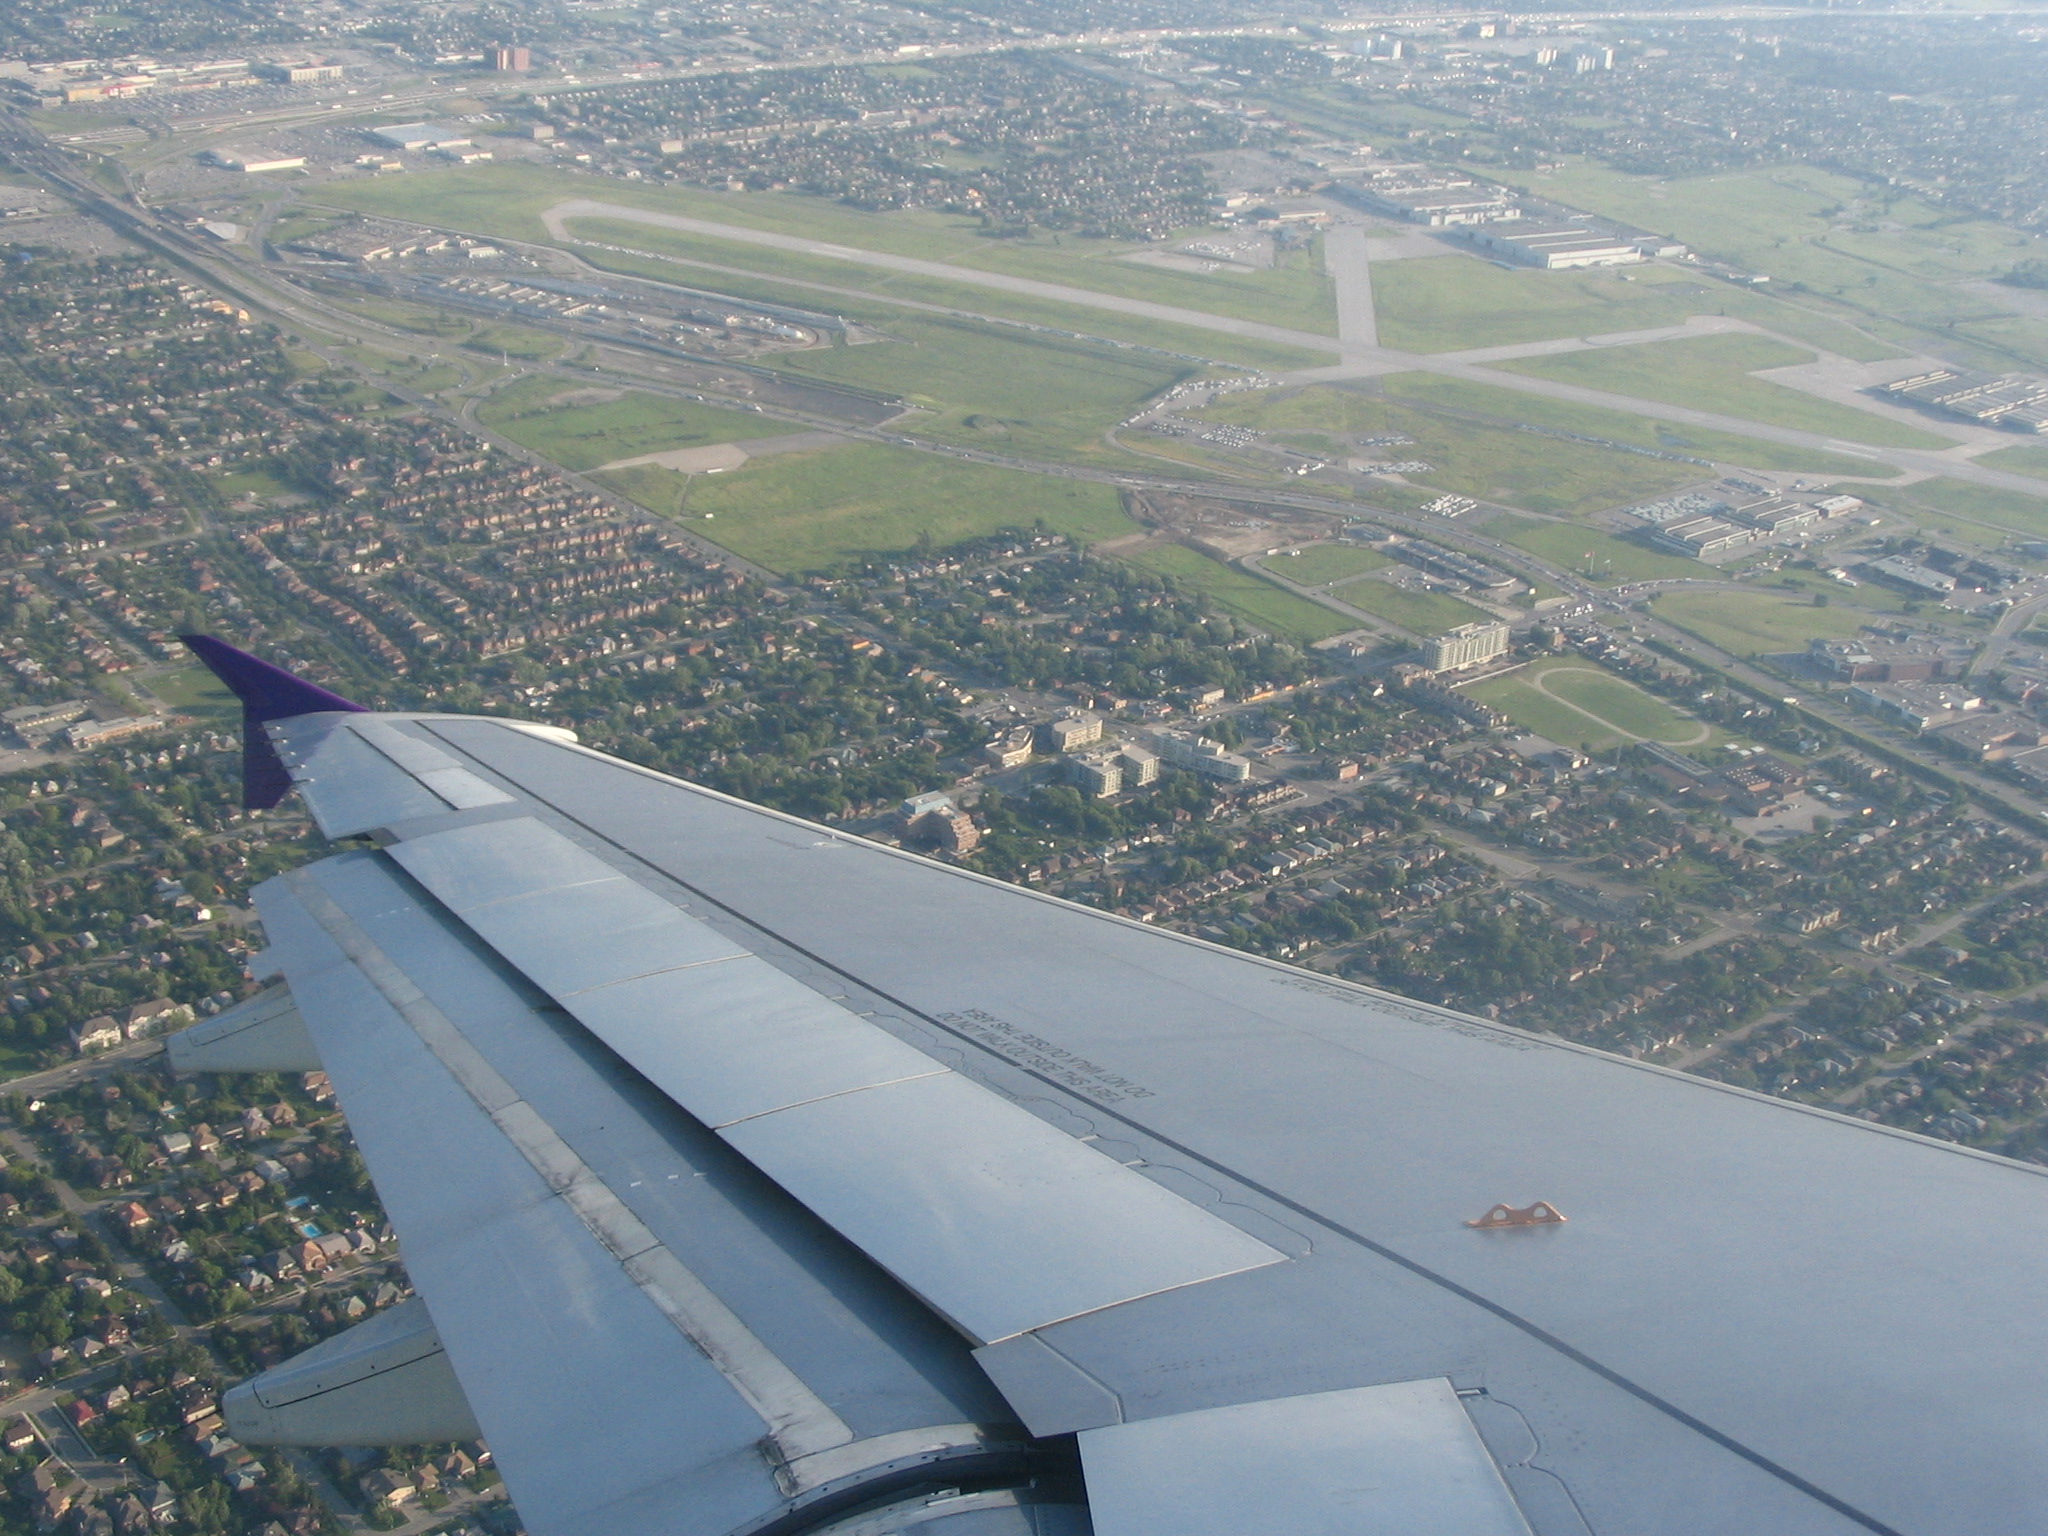 Landing in Toronto